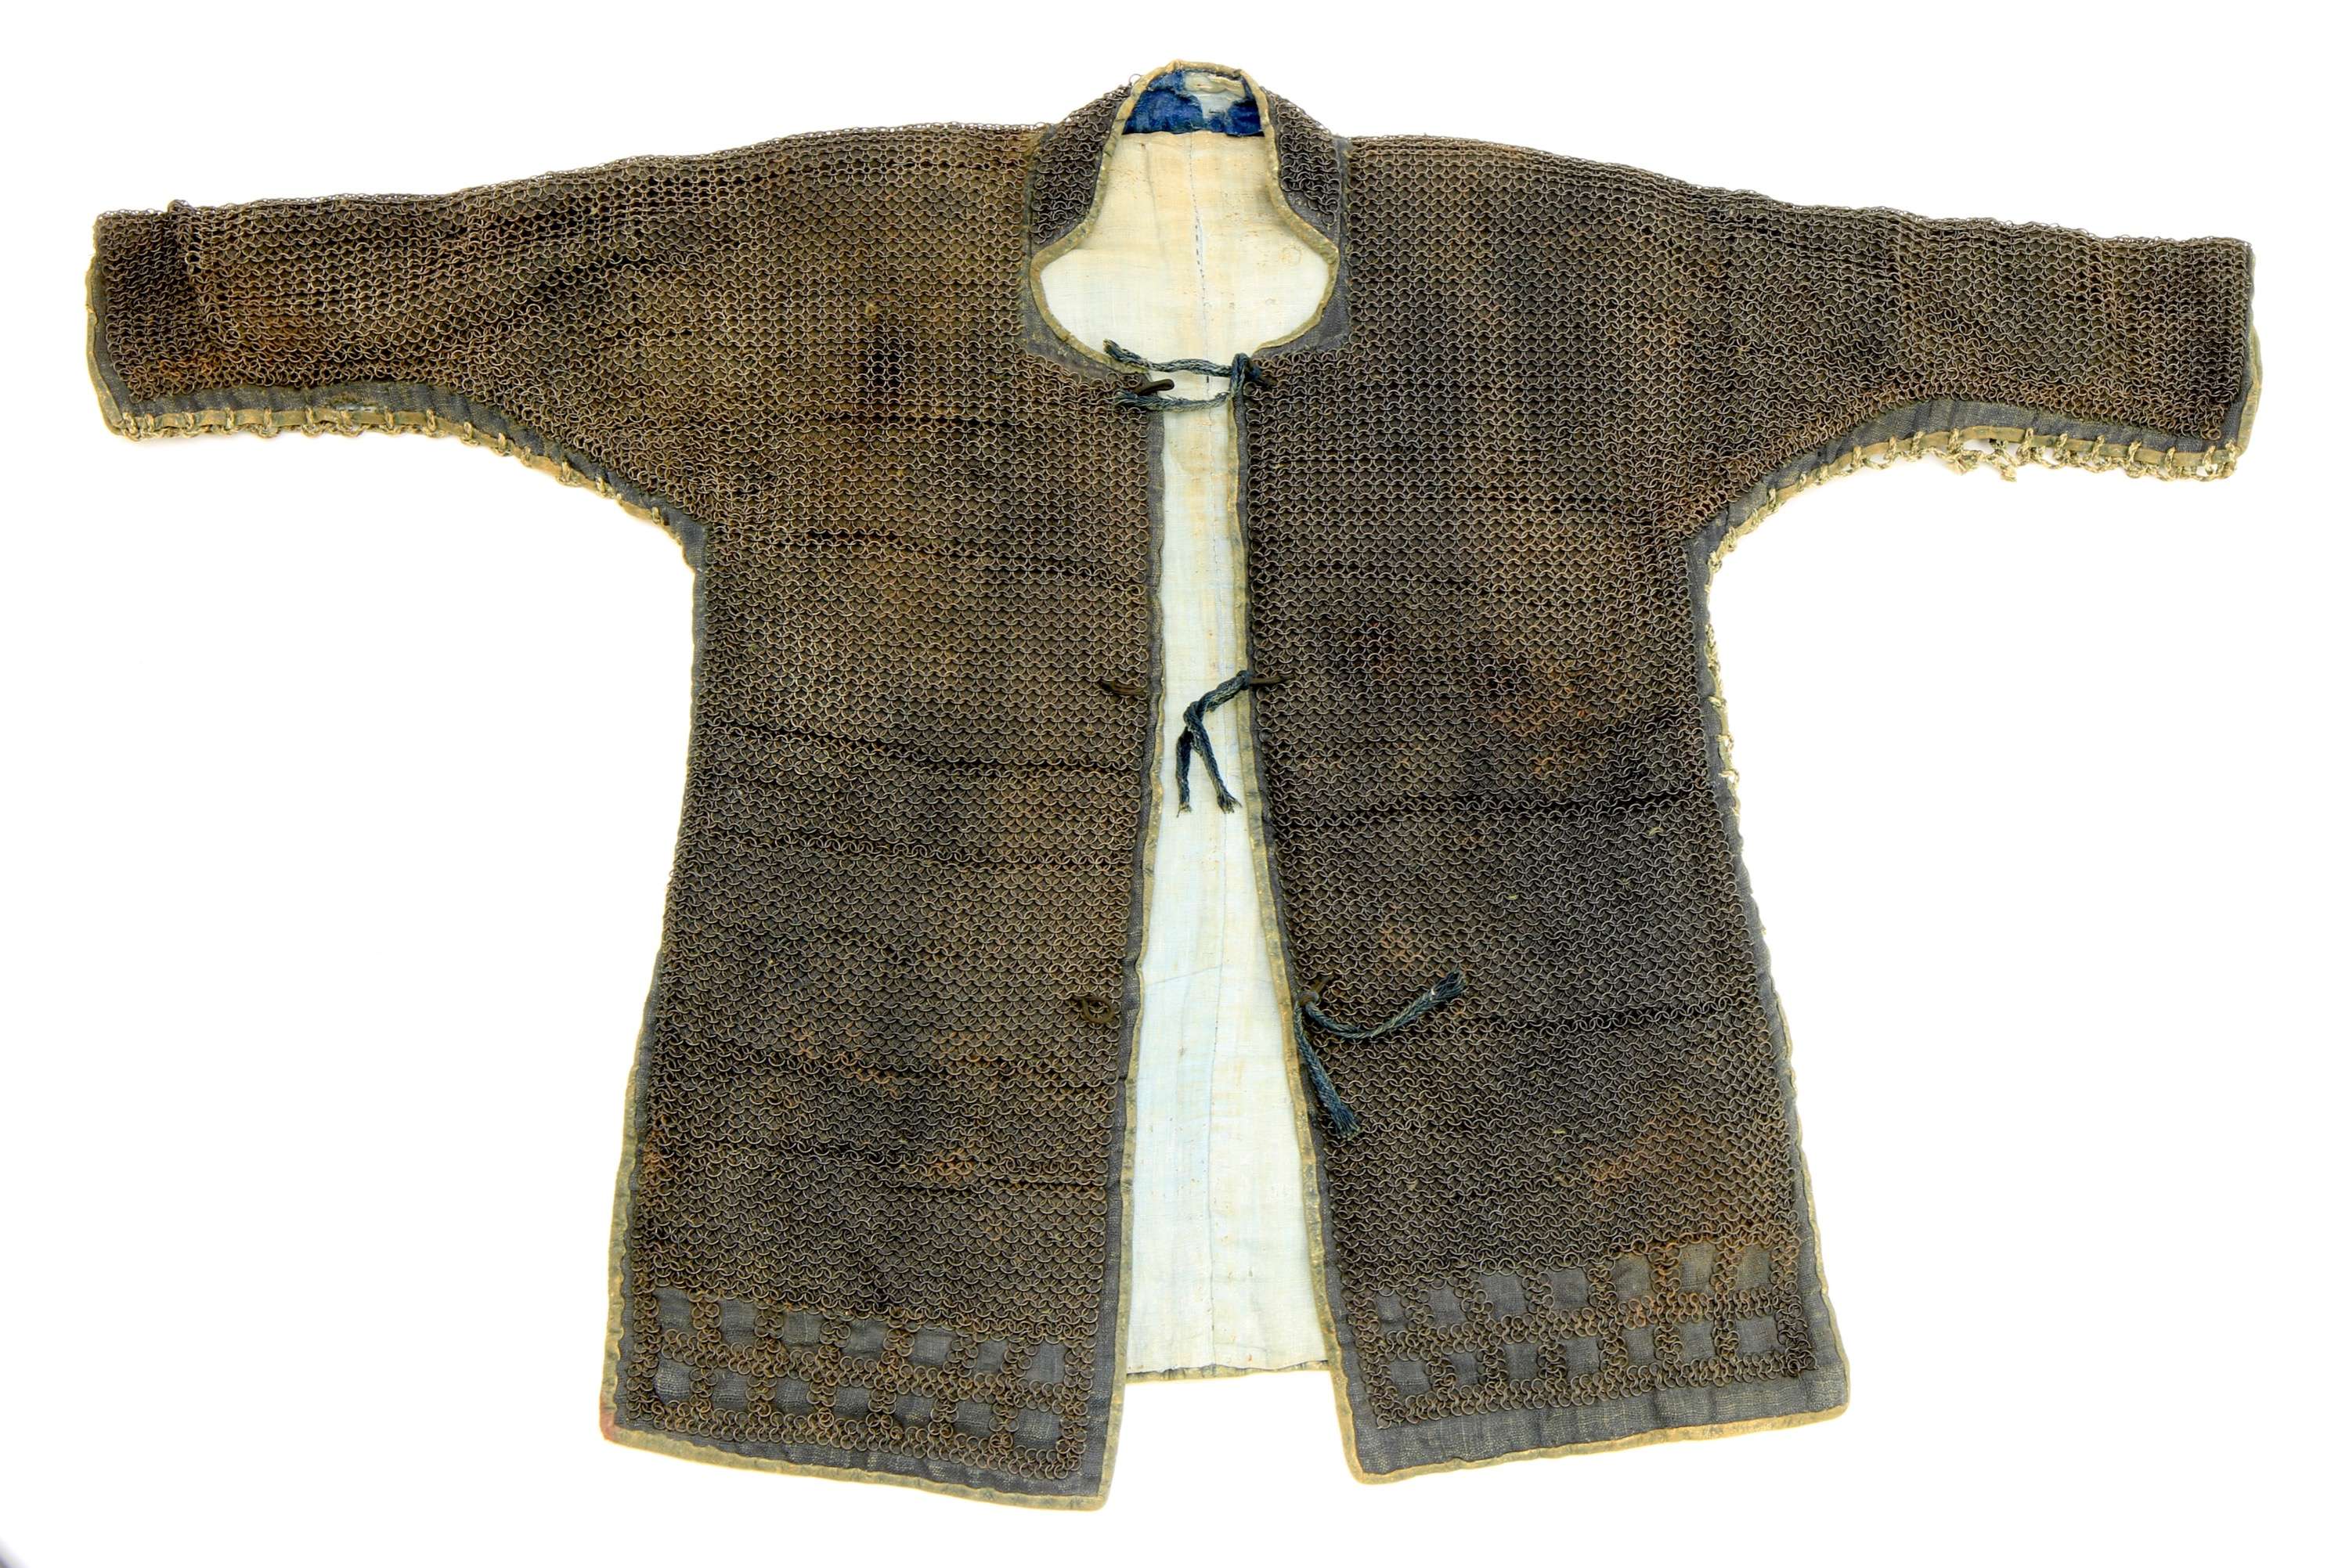 Japanese mail armor and coif kusari katabira zukin